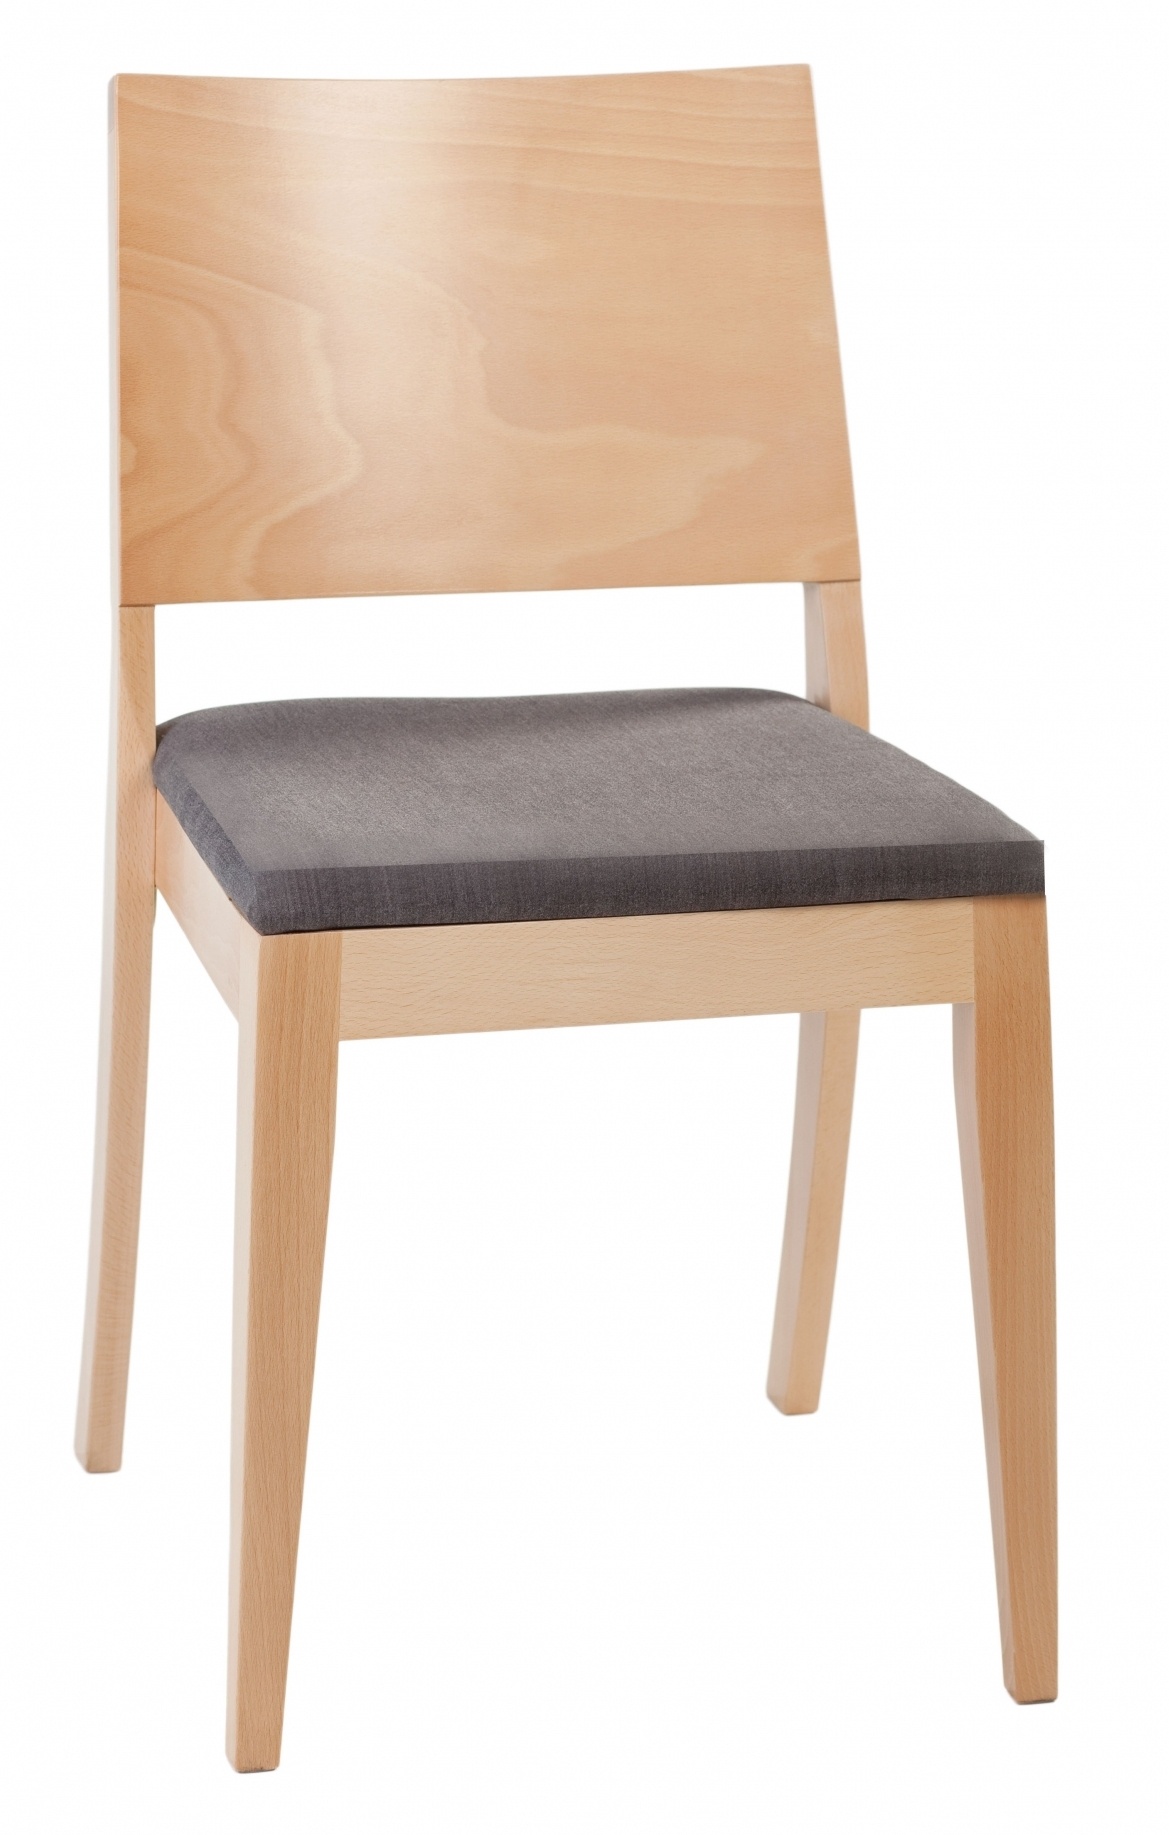 K-MJ-A-9435 krzesło drewniane w wersji tapicerowanej